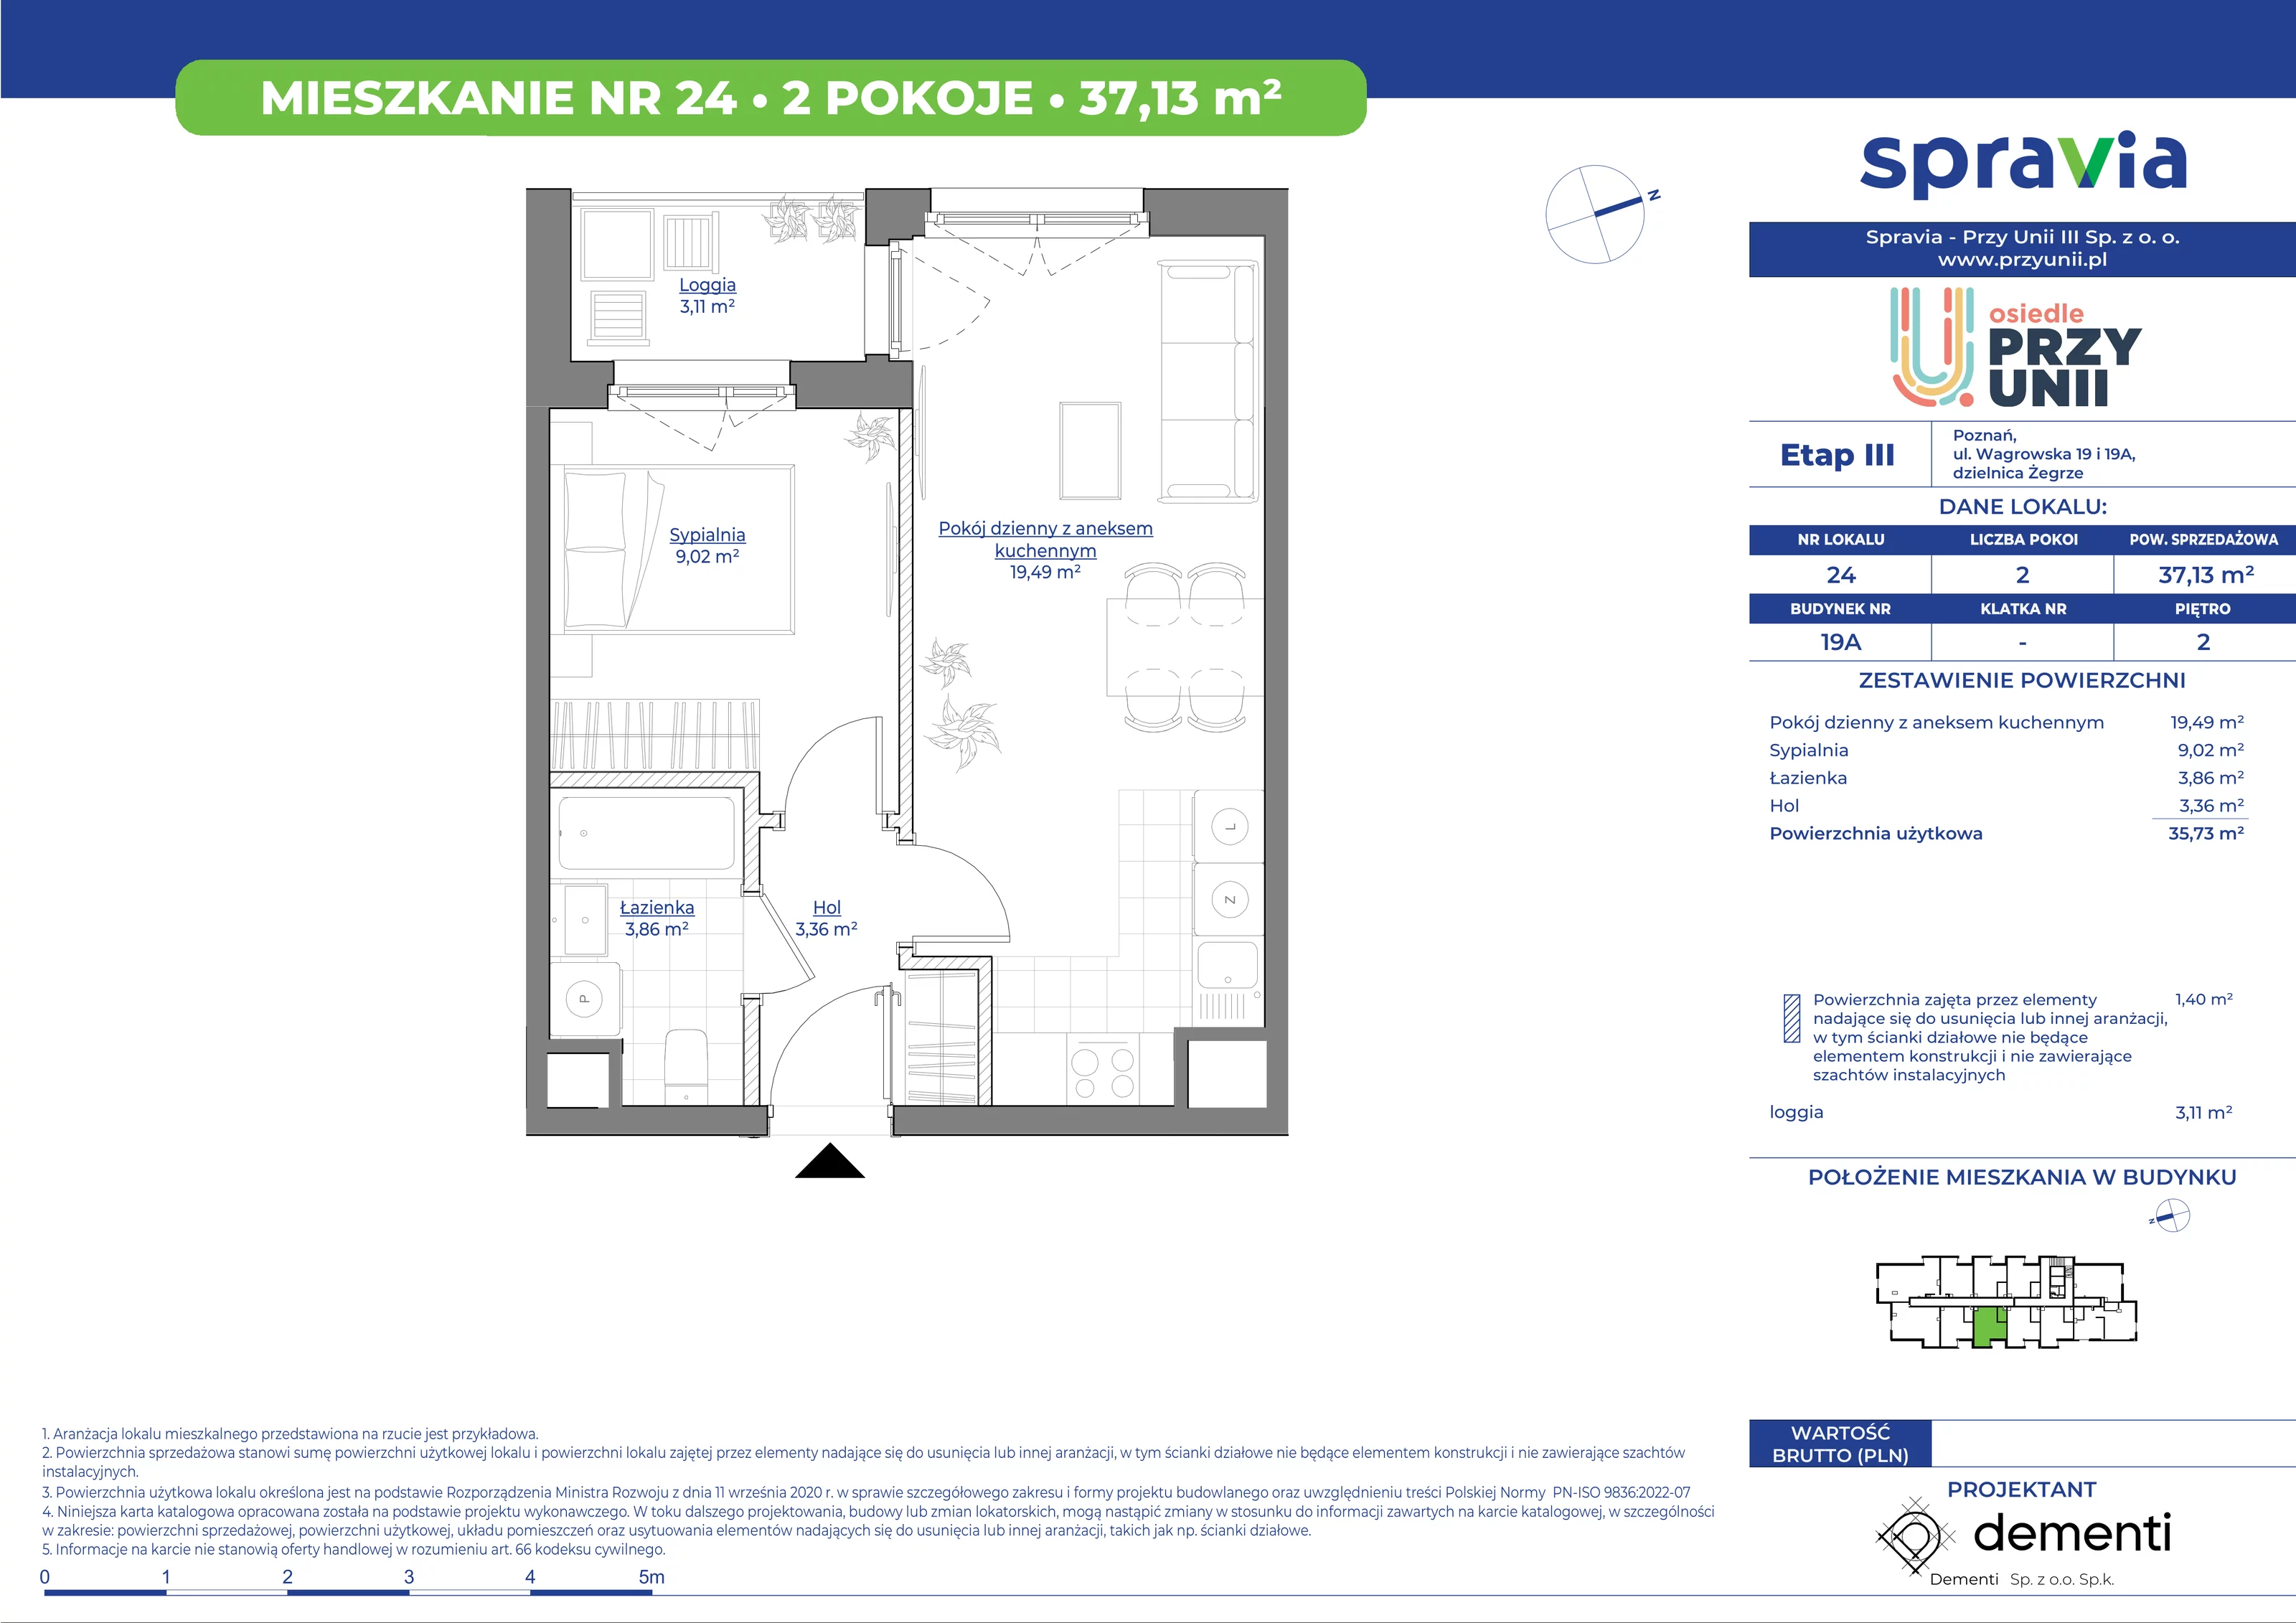 Mieszkanie 37,13 m², piętro 2, oferta nr 19A-24, Przy Unii, Poznań, Żegrze, ul. Wagrowska 19 i 19A